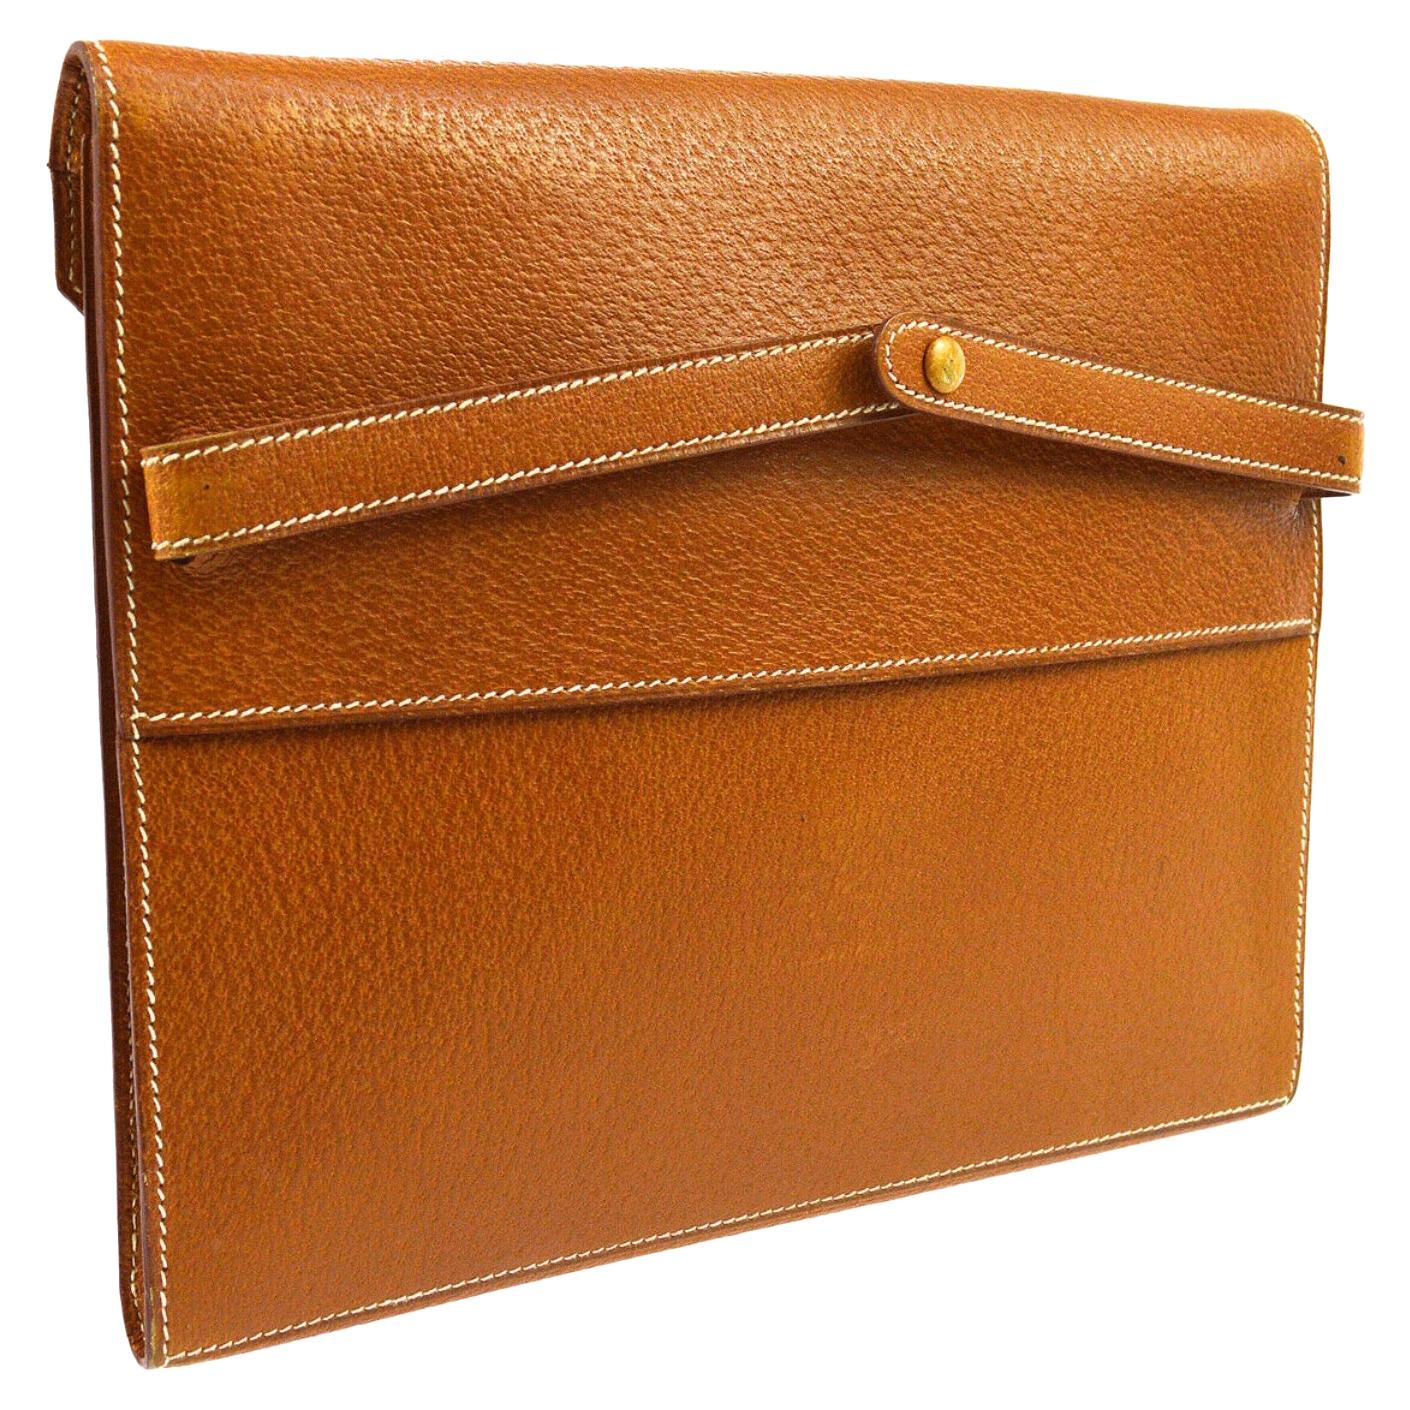 Hermes Cognac Leather Gold Top Handle Evening Portfolio Men's Clutch Flap Bag